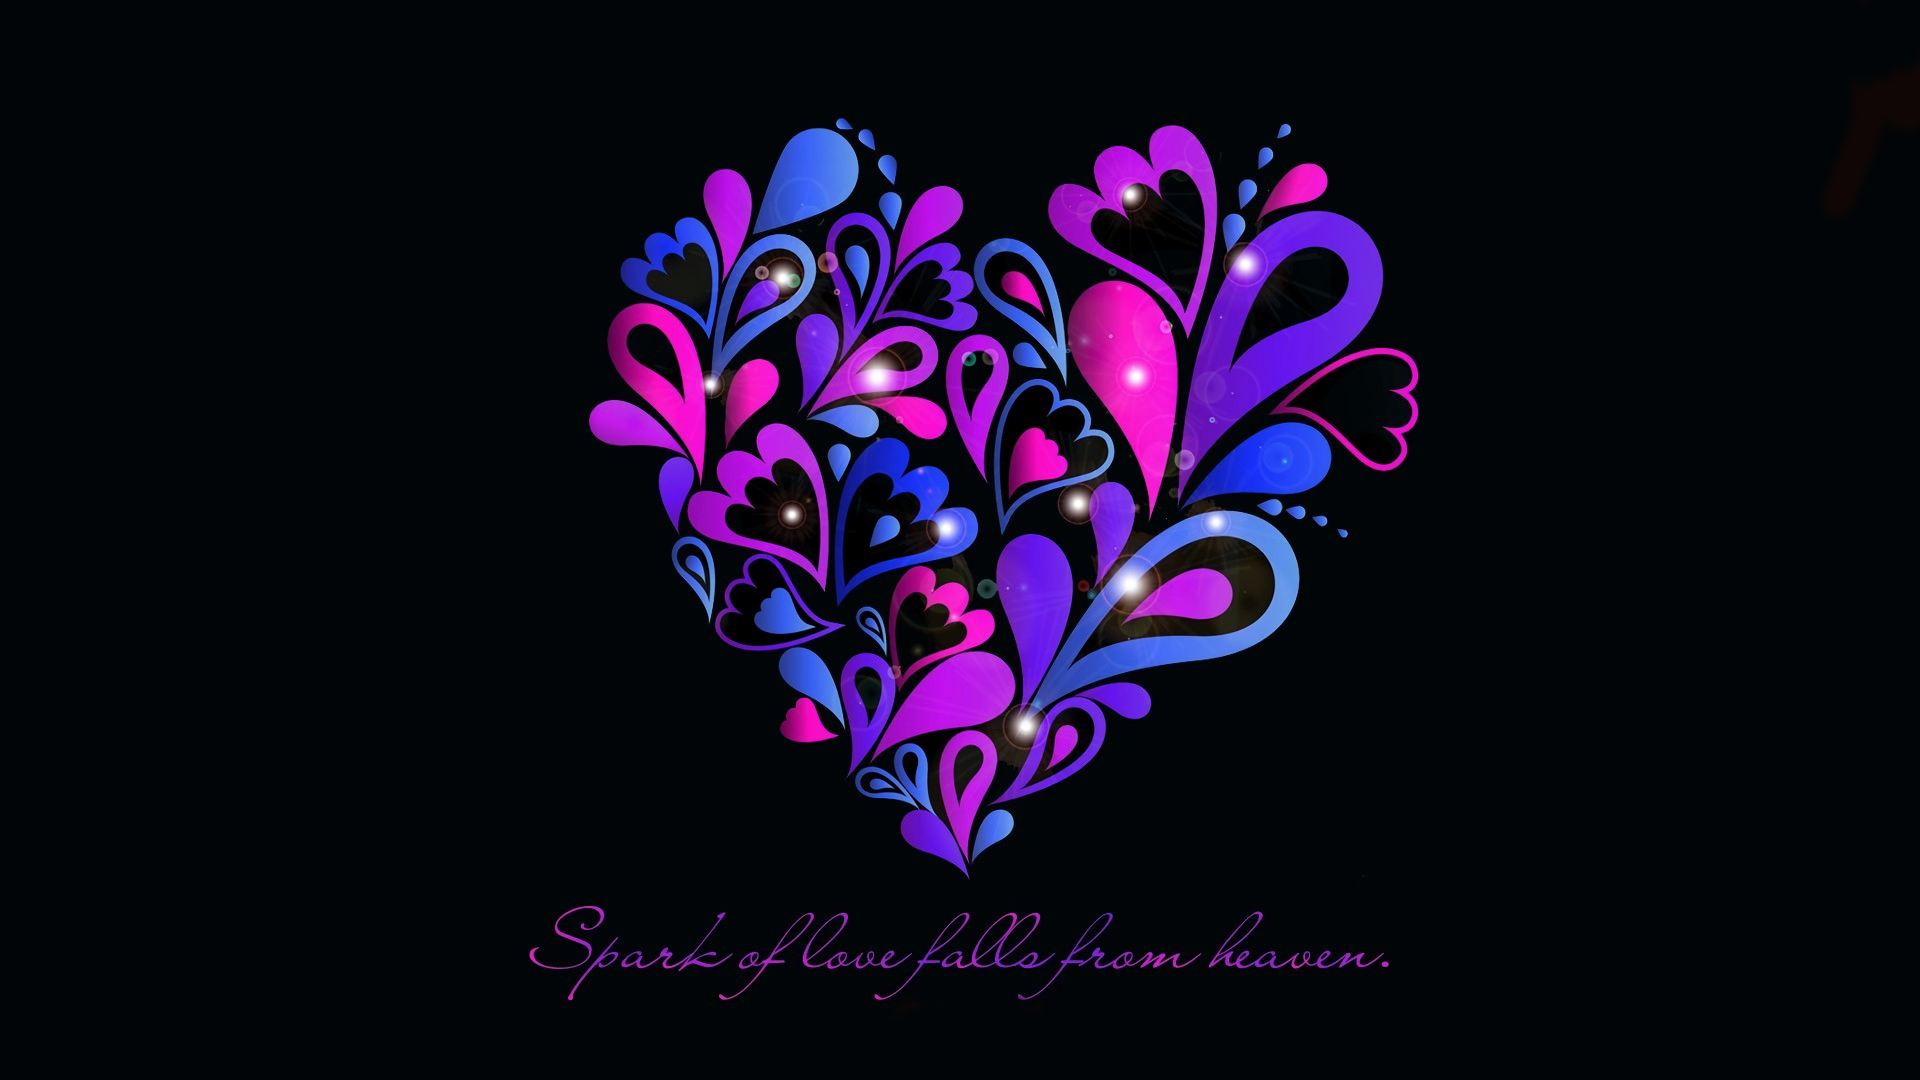 Artistic Blue Heart Love Purple Quote 1920x1080